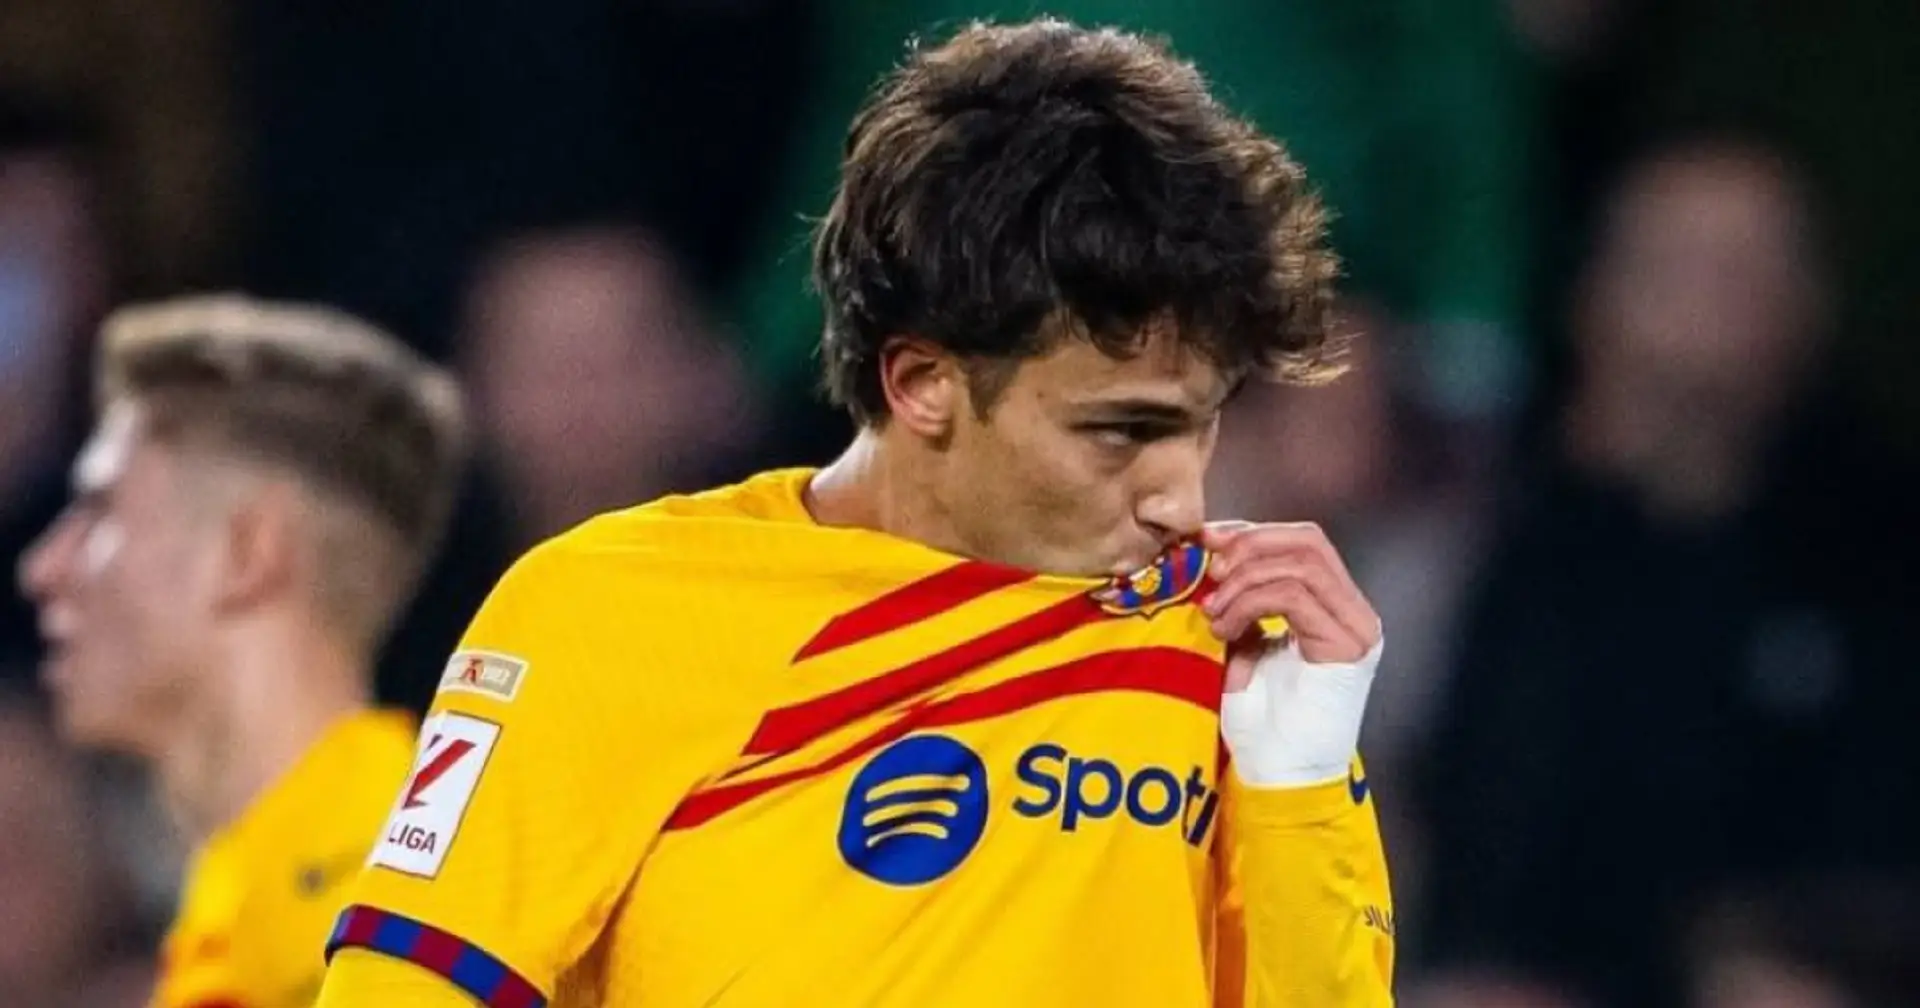 Xavi "pas convaincu" par Joao Felix - les deux conditions pour que l'attaquant reste au Barça révélées